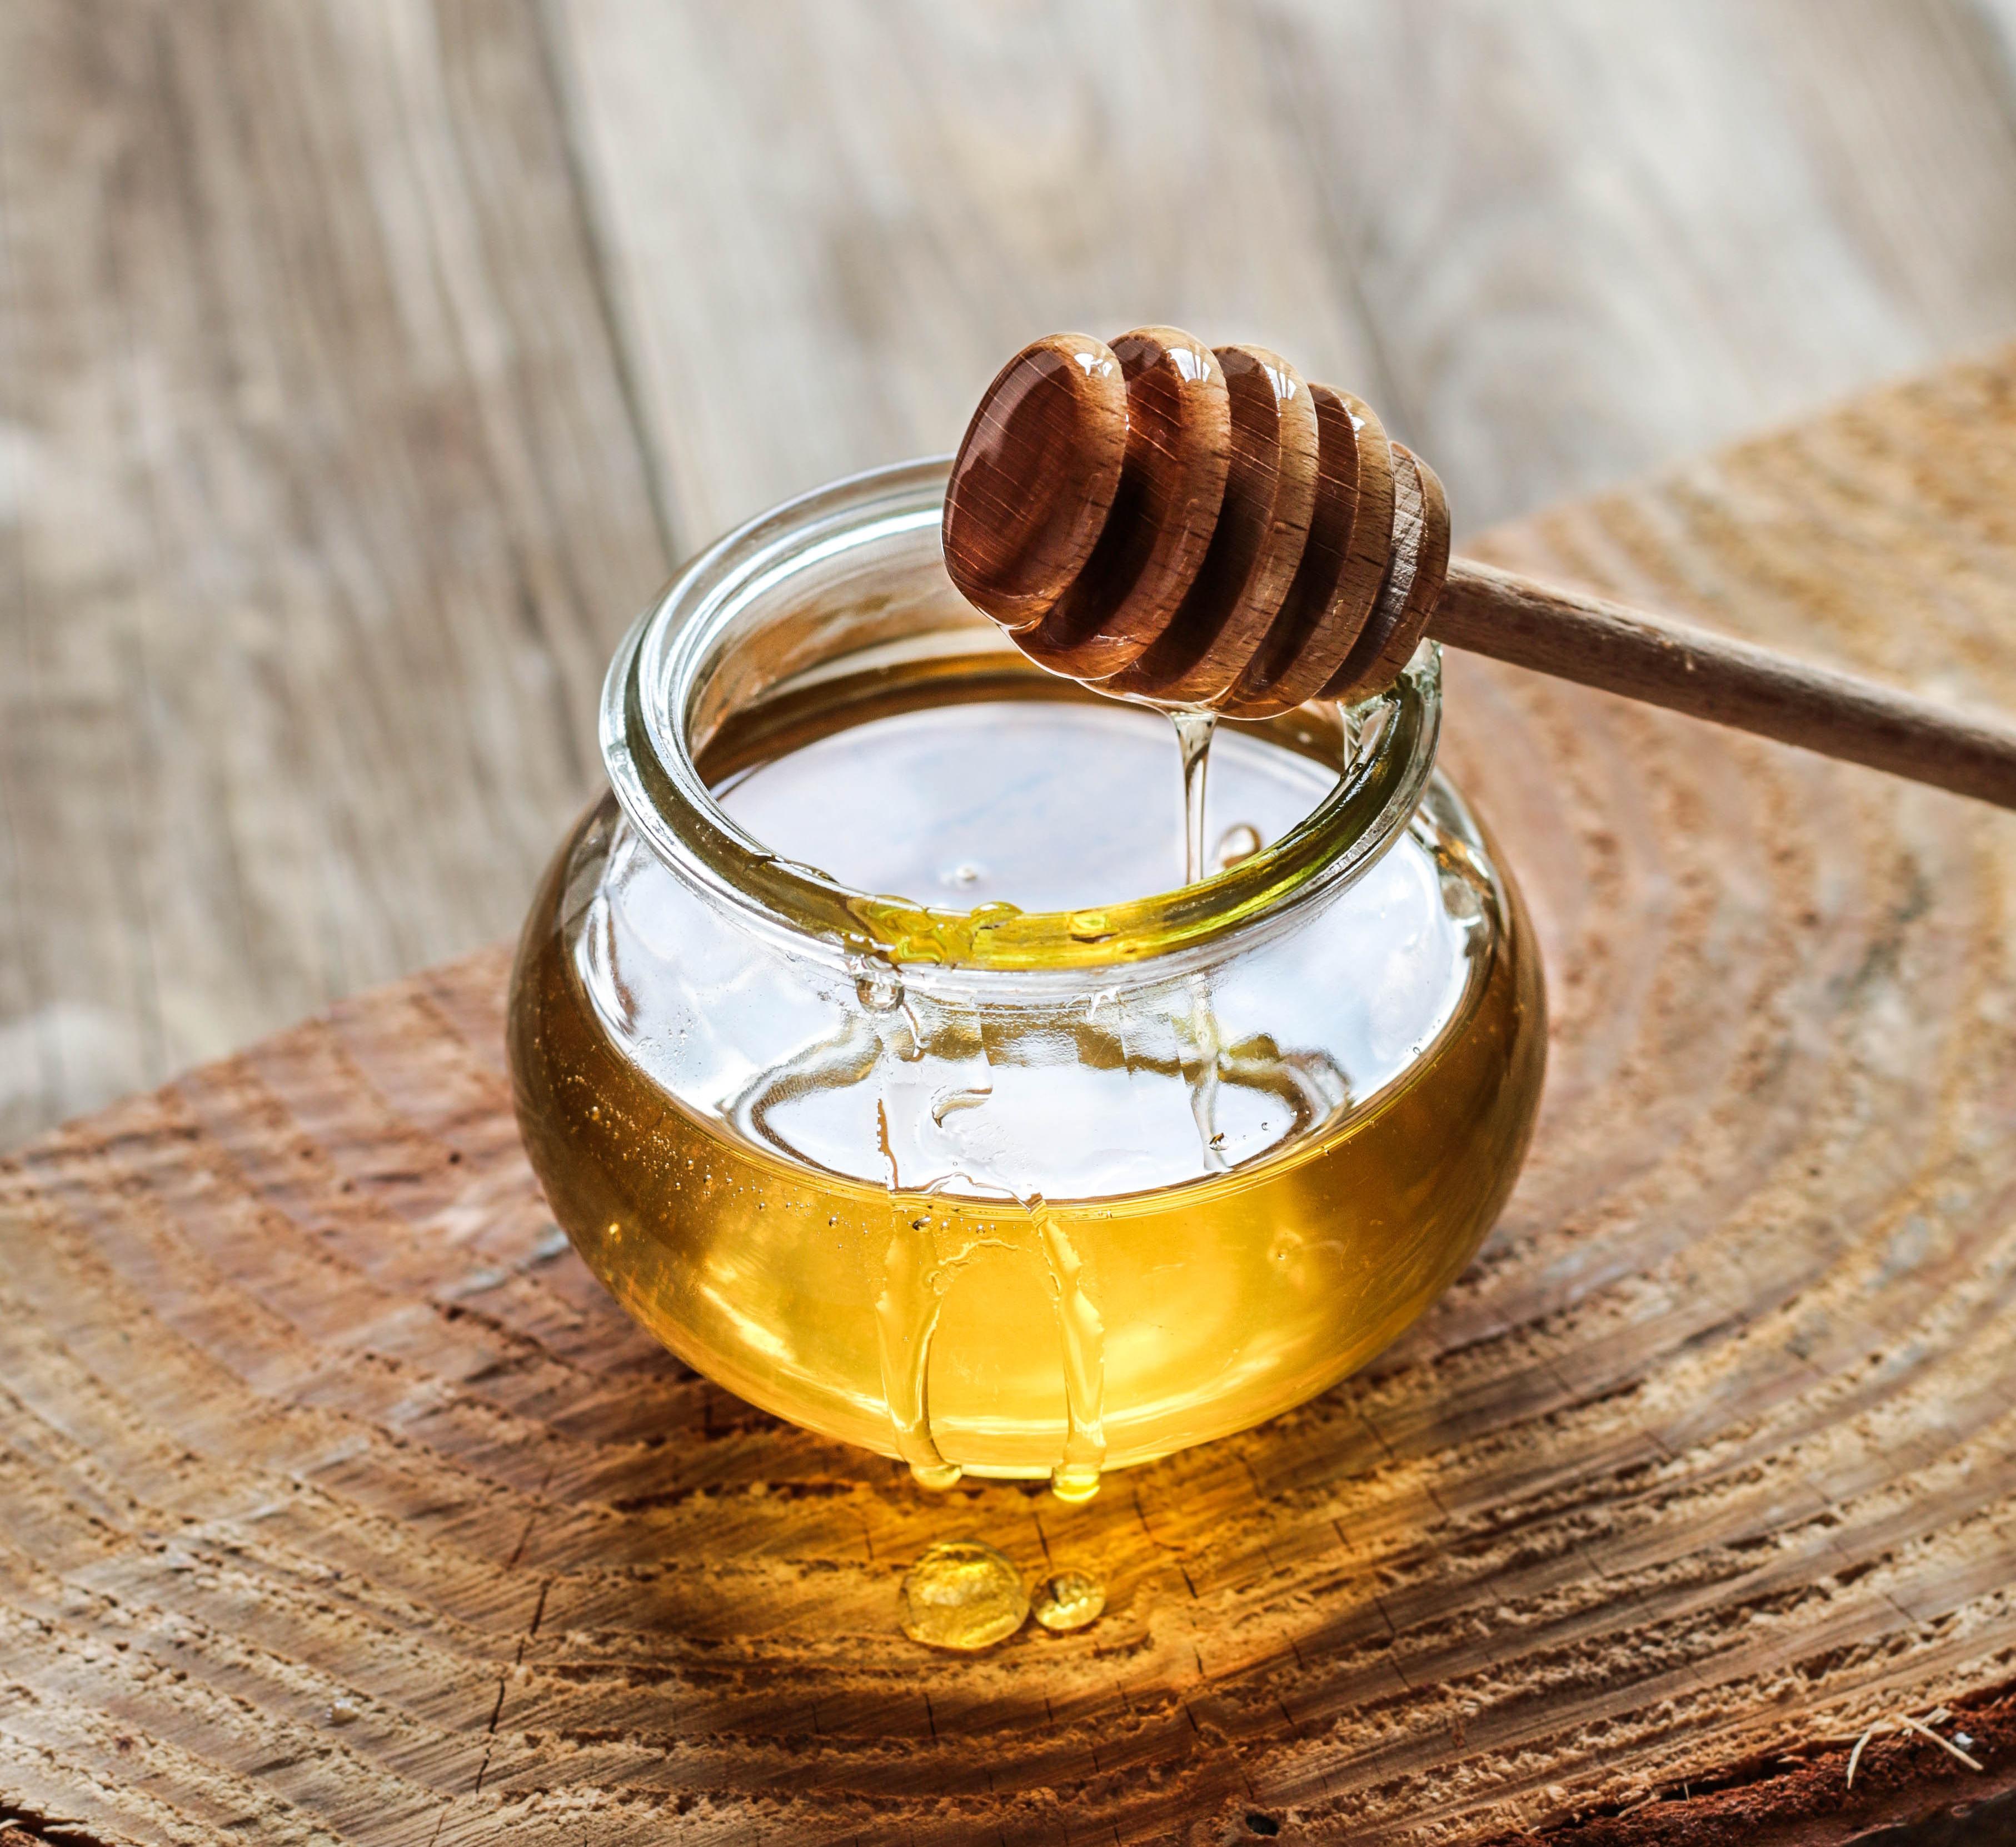 HVA SMAKER DET?: Det er luktesansen som hjelper deg å forstå om det søte smaker for eksempel honning eller vanilje.